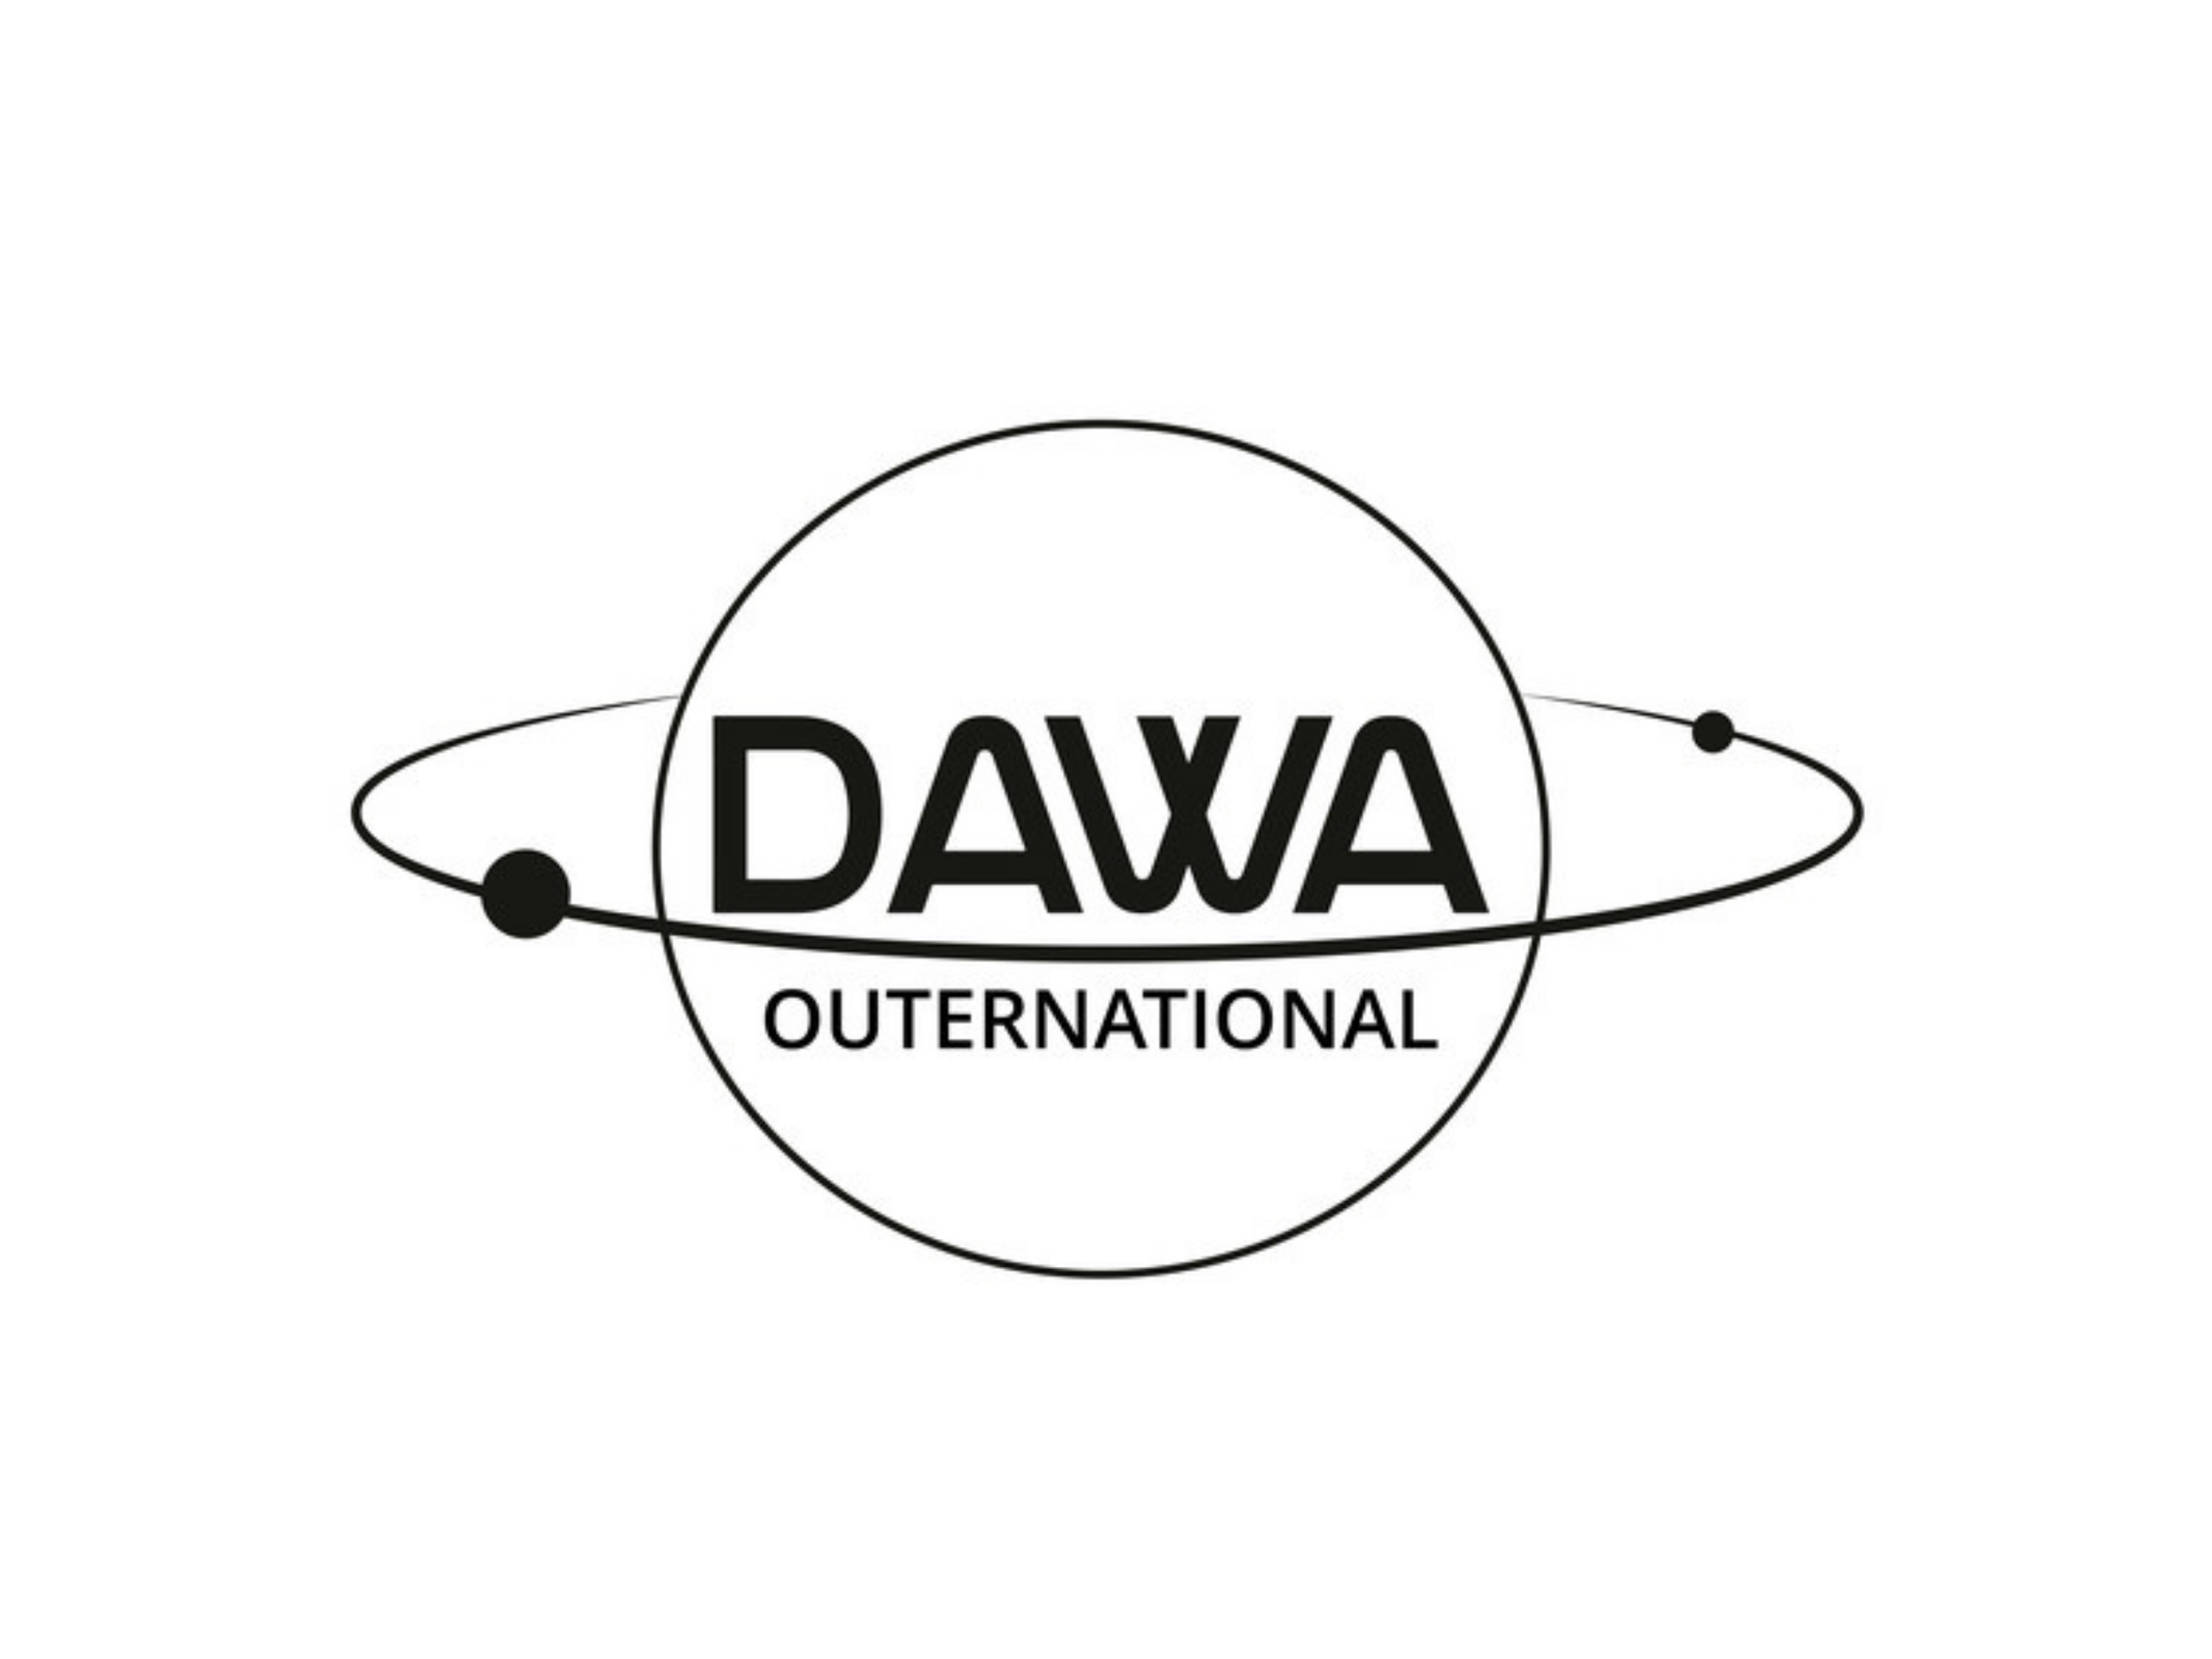 Dawa Outernational